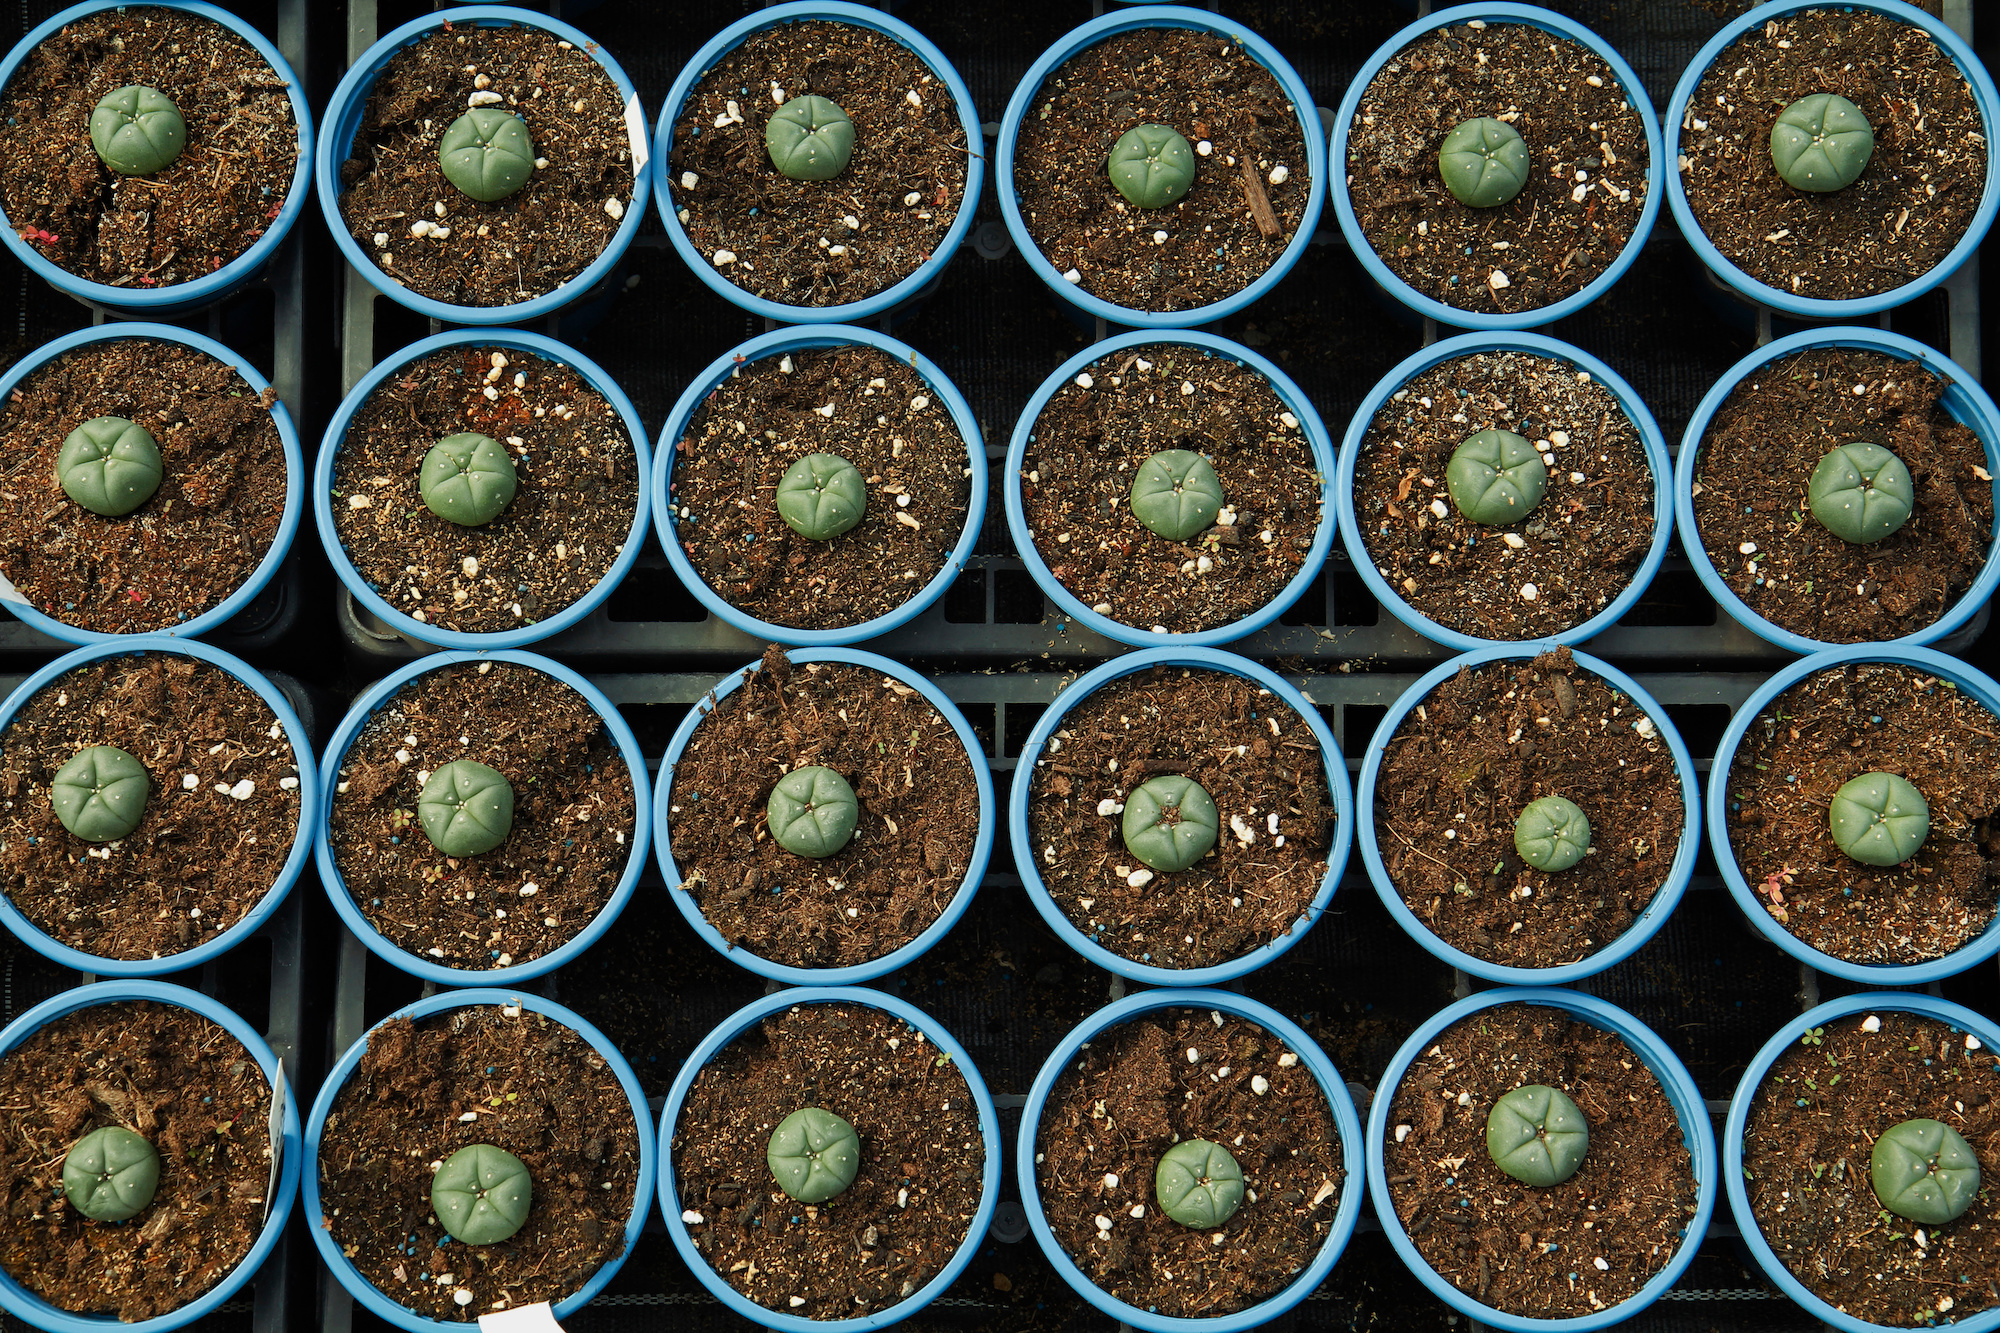 Peyote growing in pots